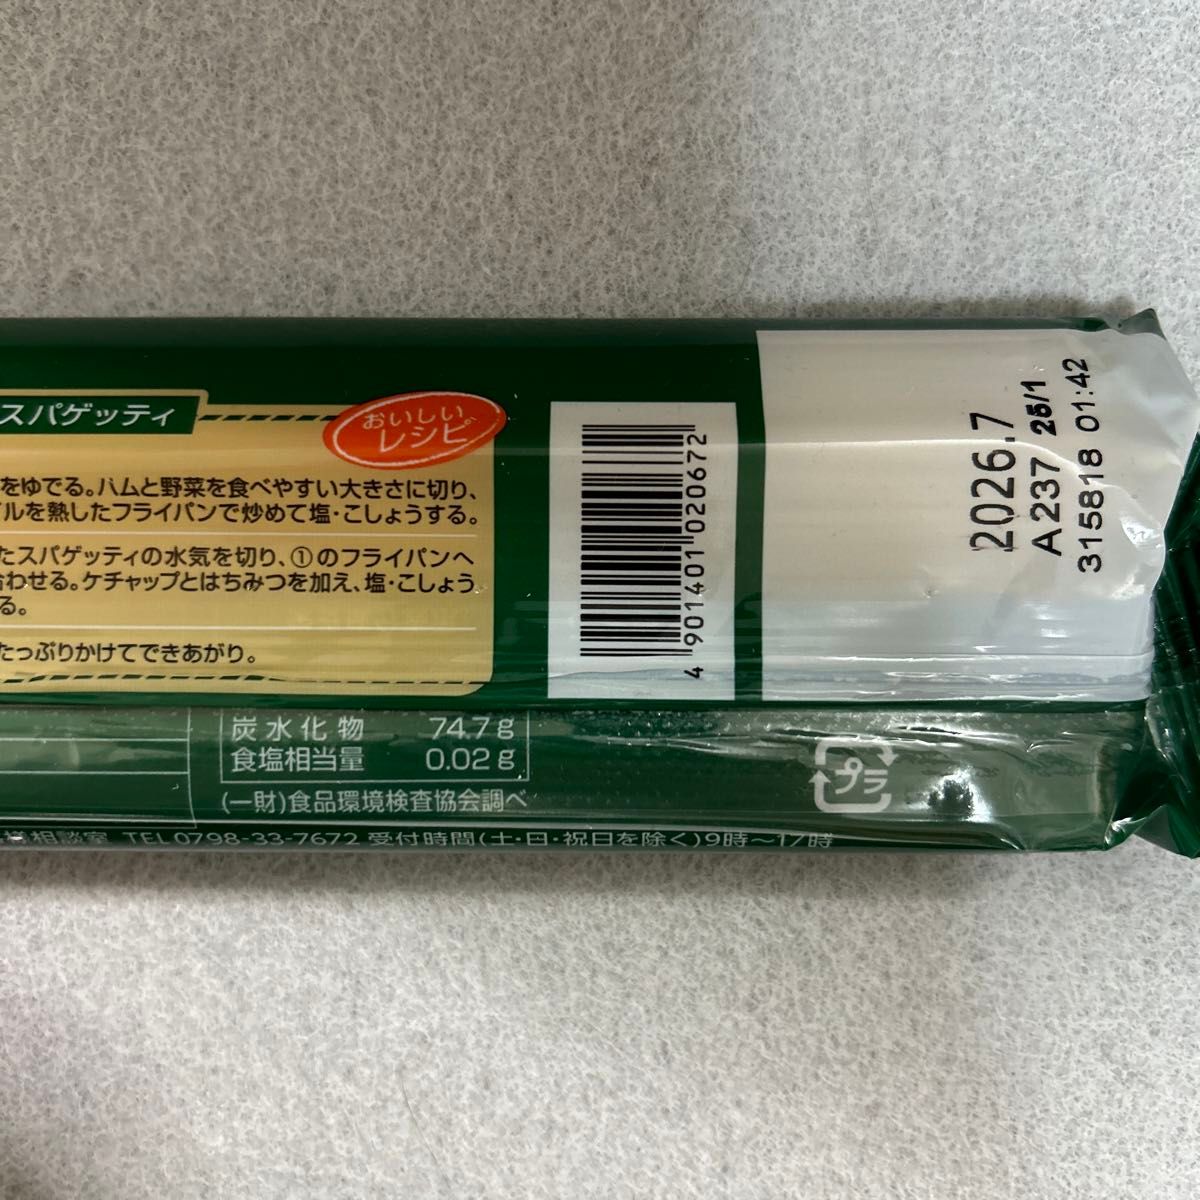 プロッシモ スパゲッティ 1.6mm 300g×4袋セット パスタまとめ売り